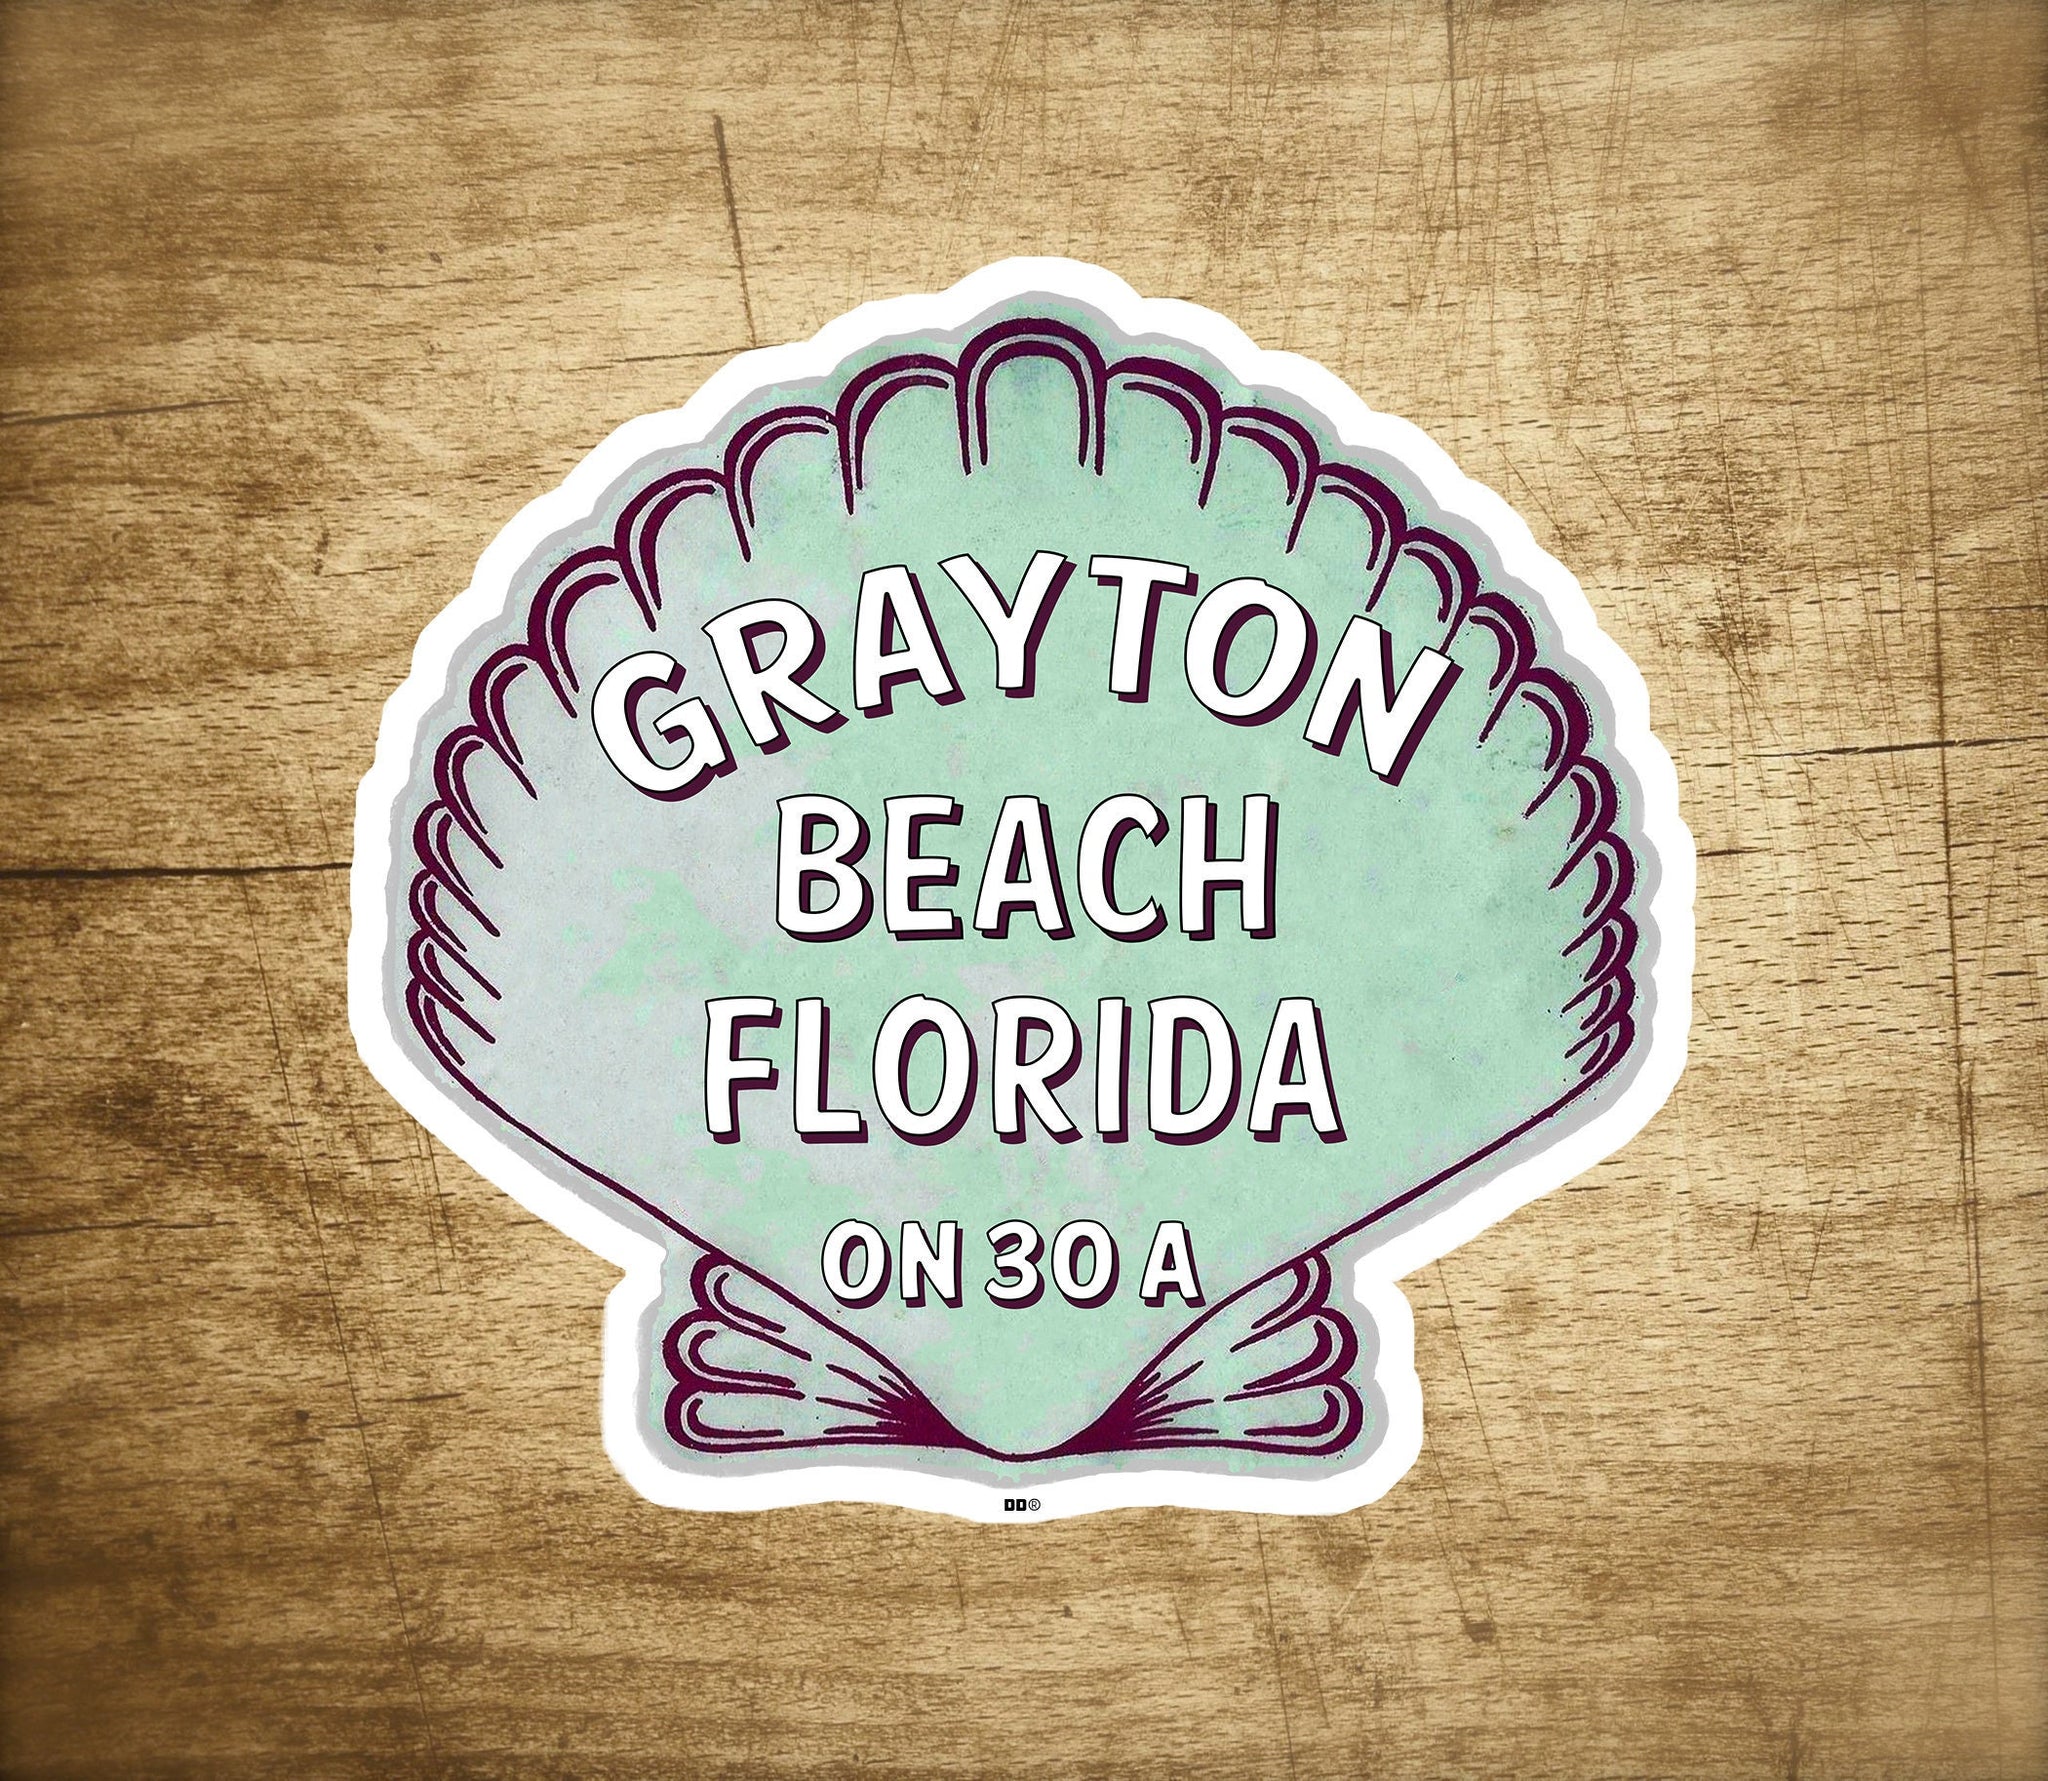 Grayton Beach Florida 3" X 2.75" Sticker Decal Vinyl 30A Emerald Coast 30 A